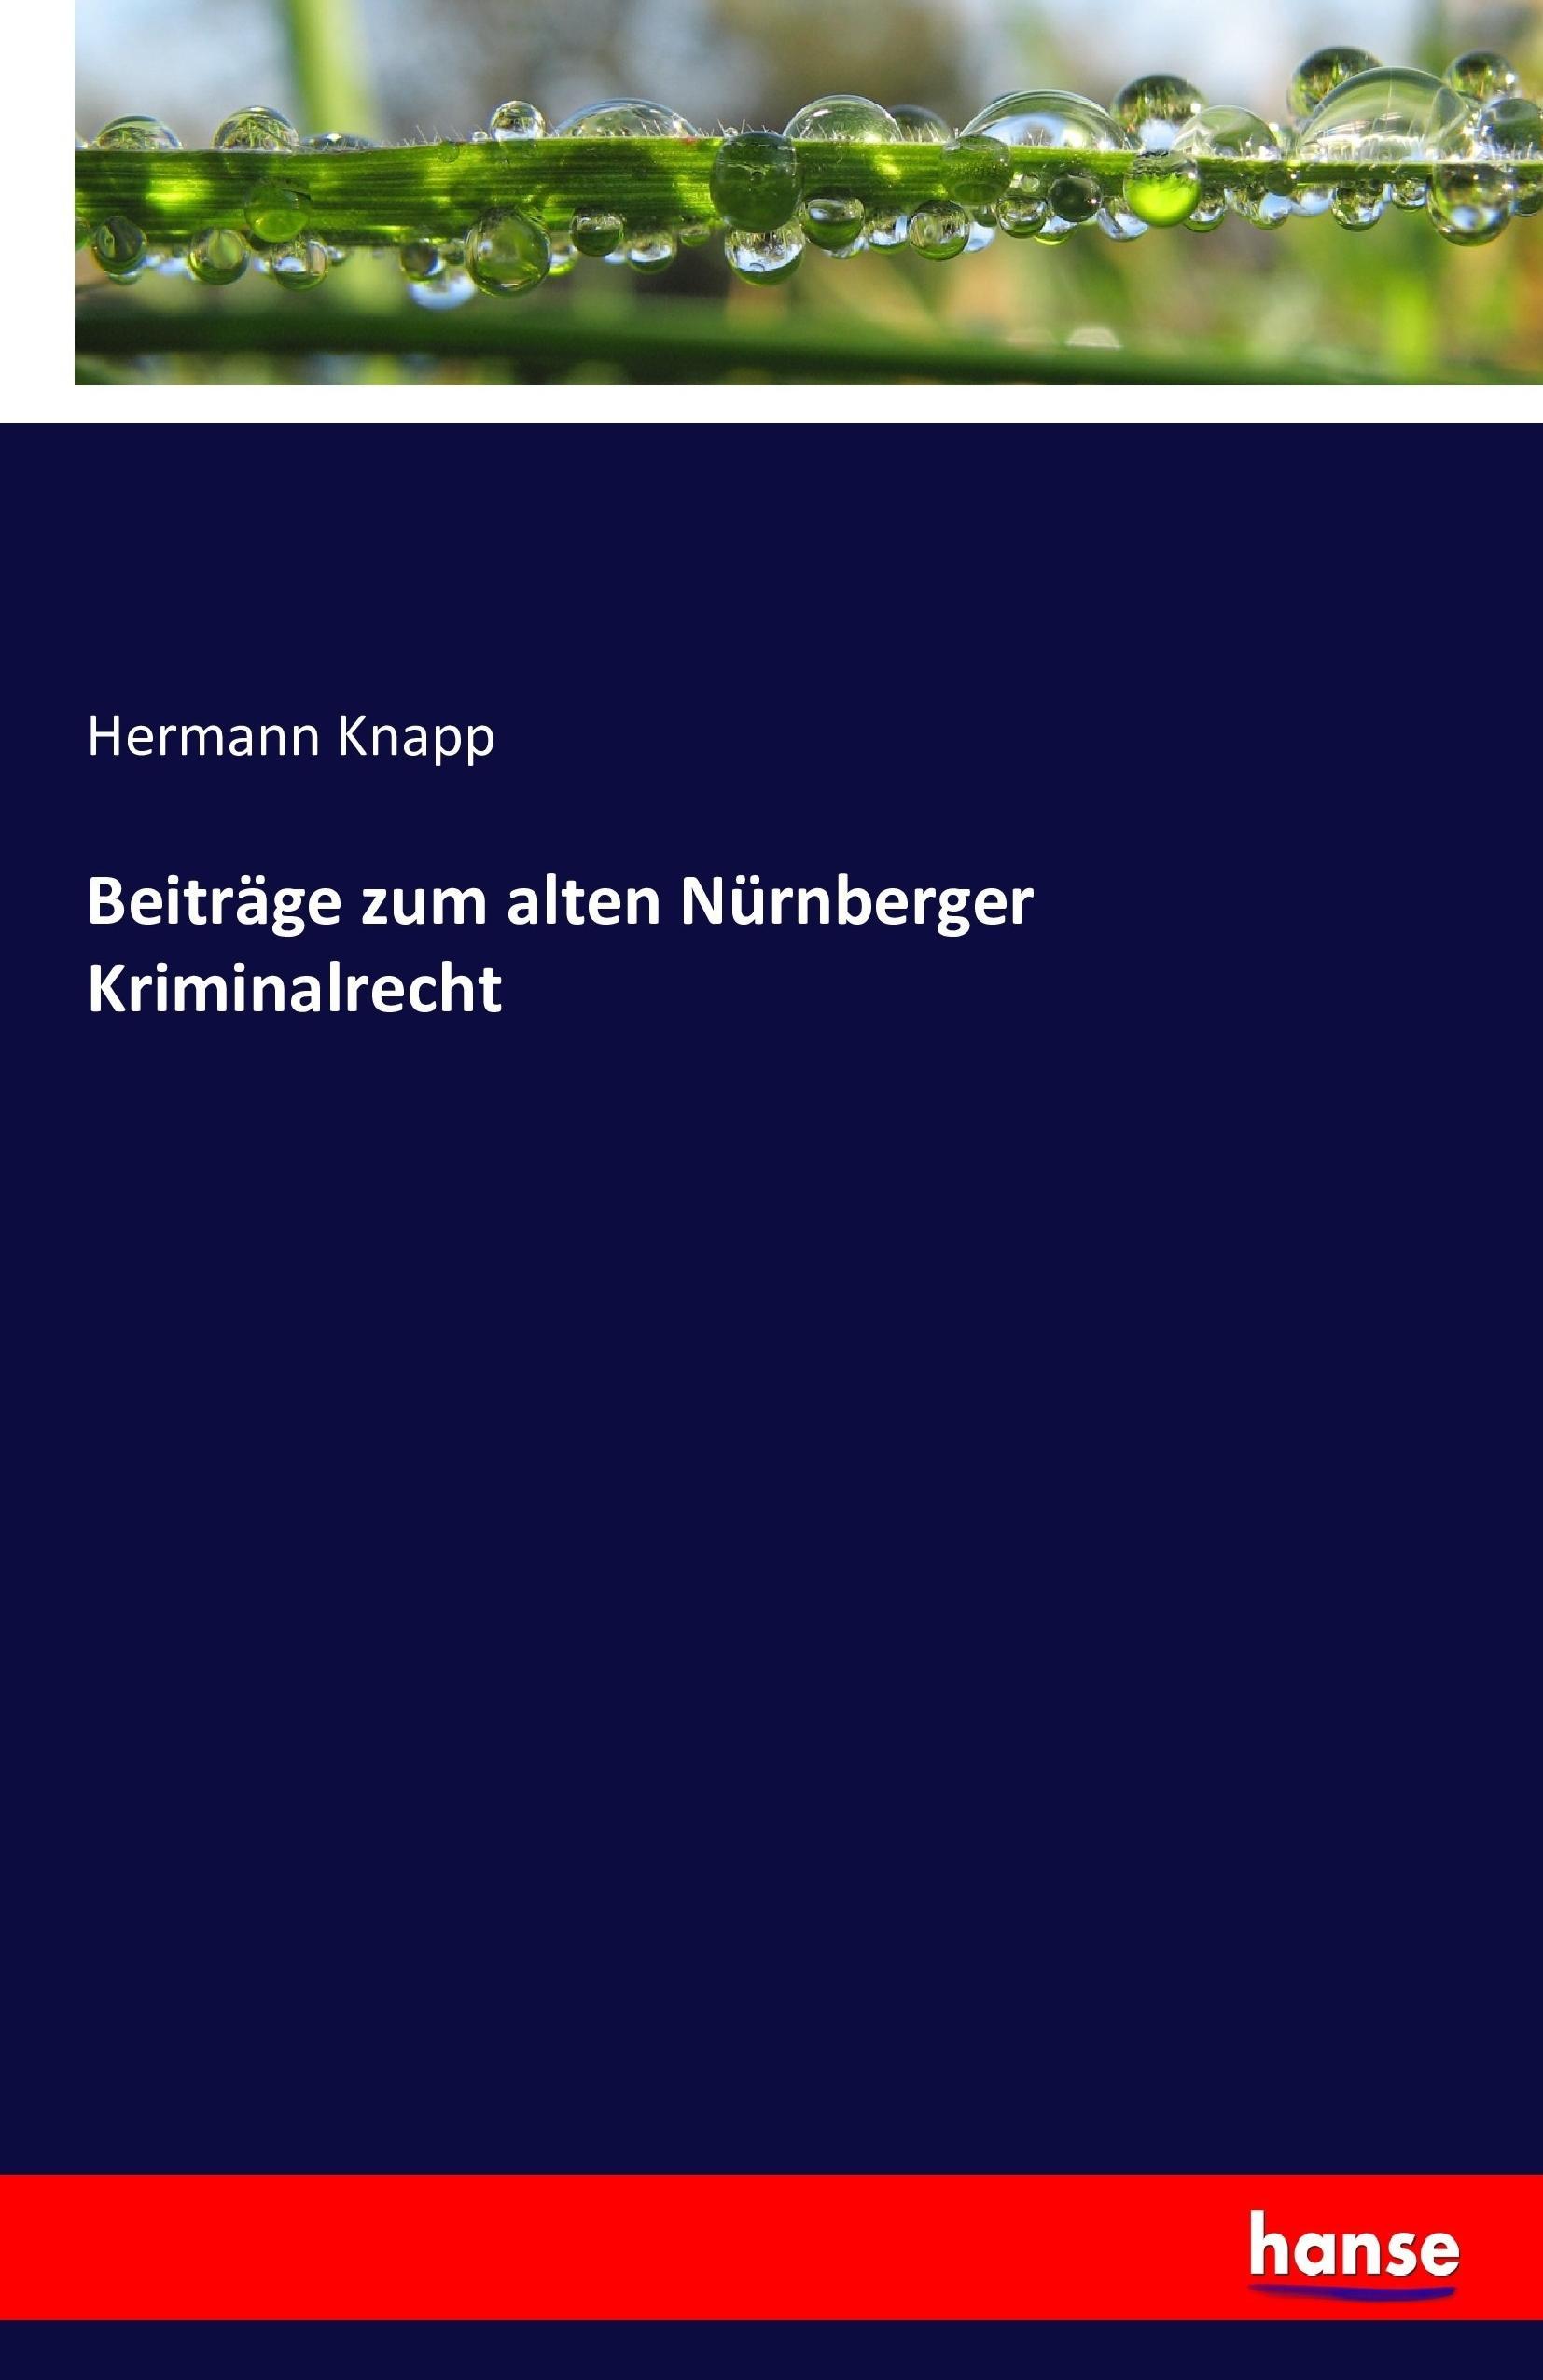 Beitraege zum alten Nuernberger Kriminalrecht - Knapp, Hermann